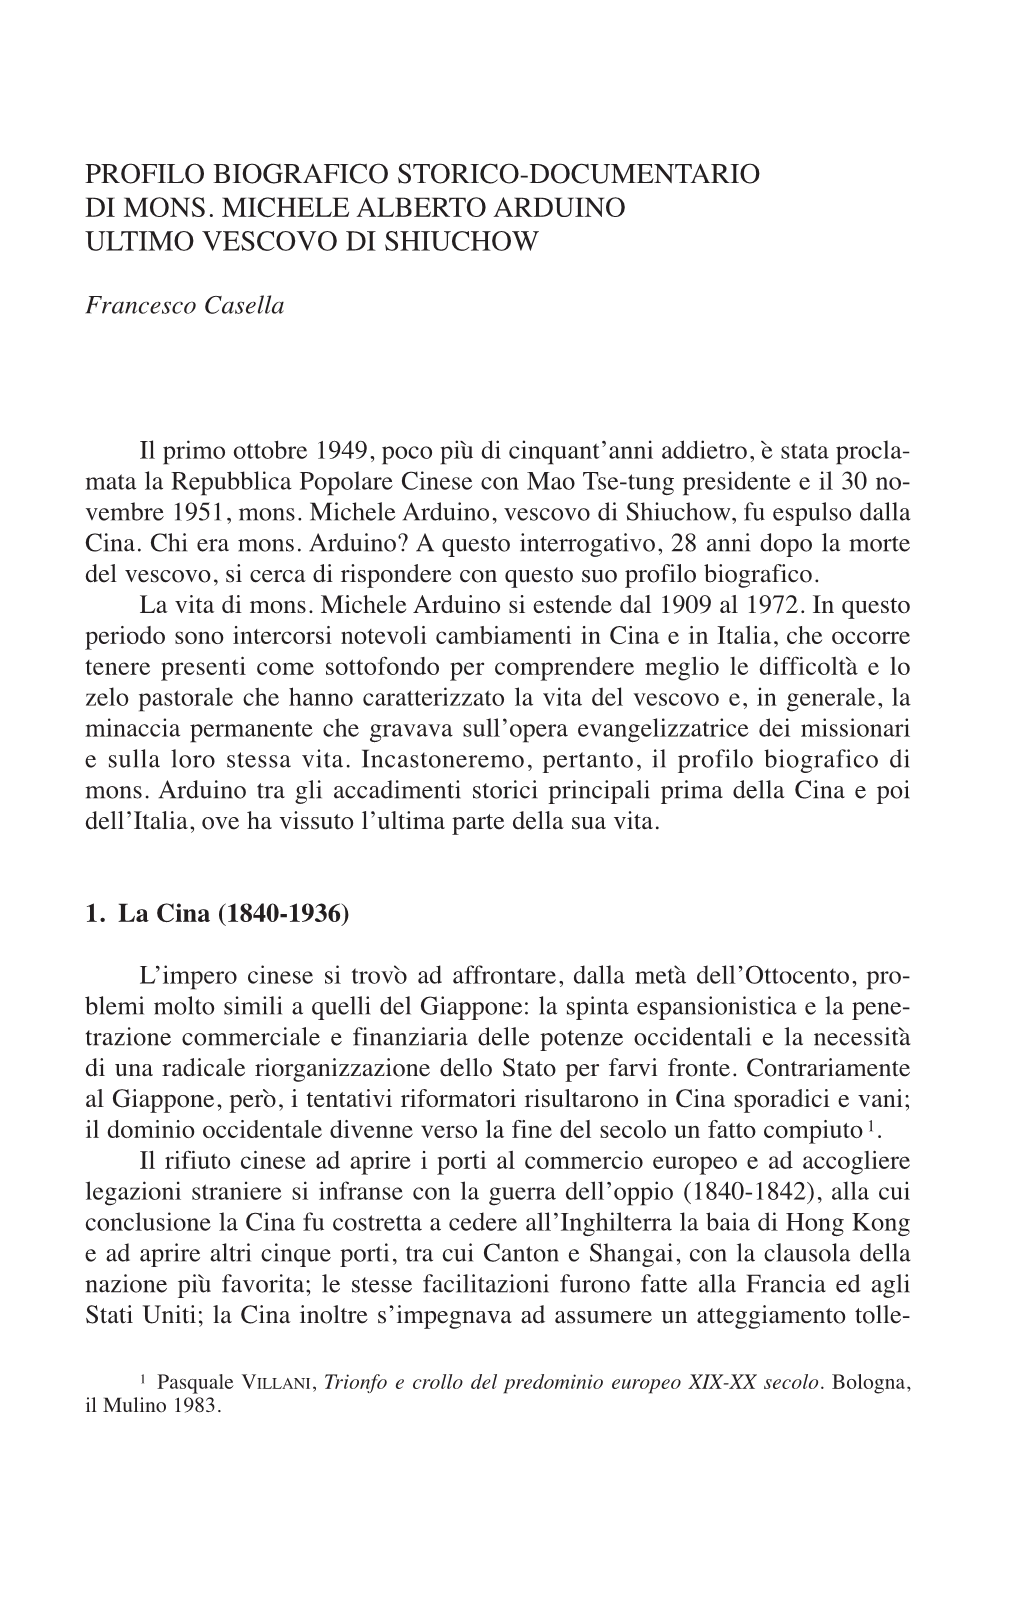 F. Casella, Profilo Biografico Storico-Documentario Di Mons